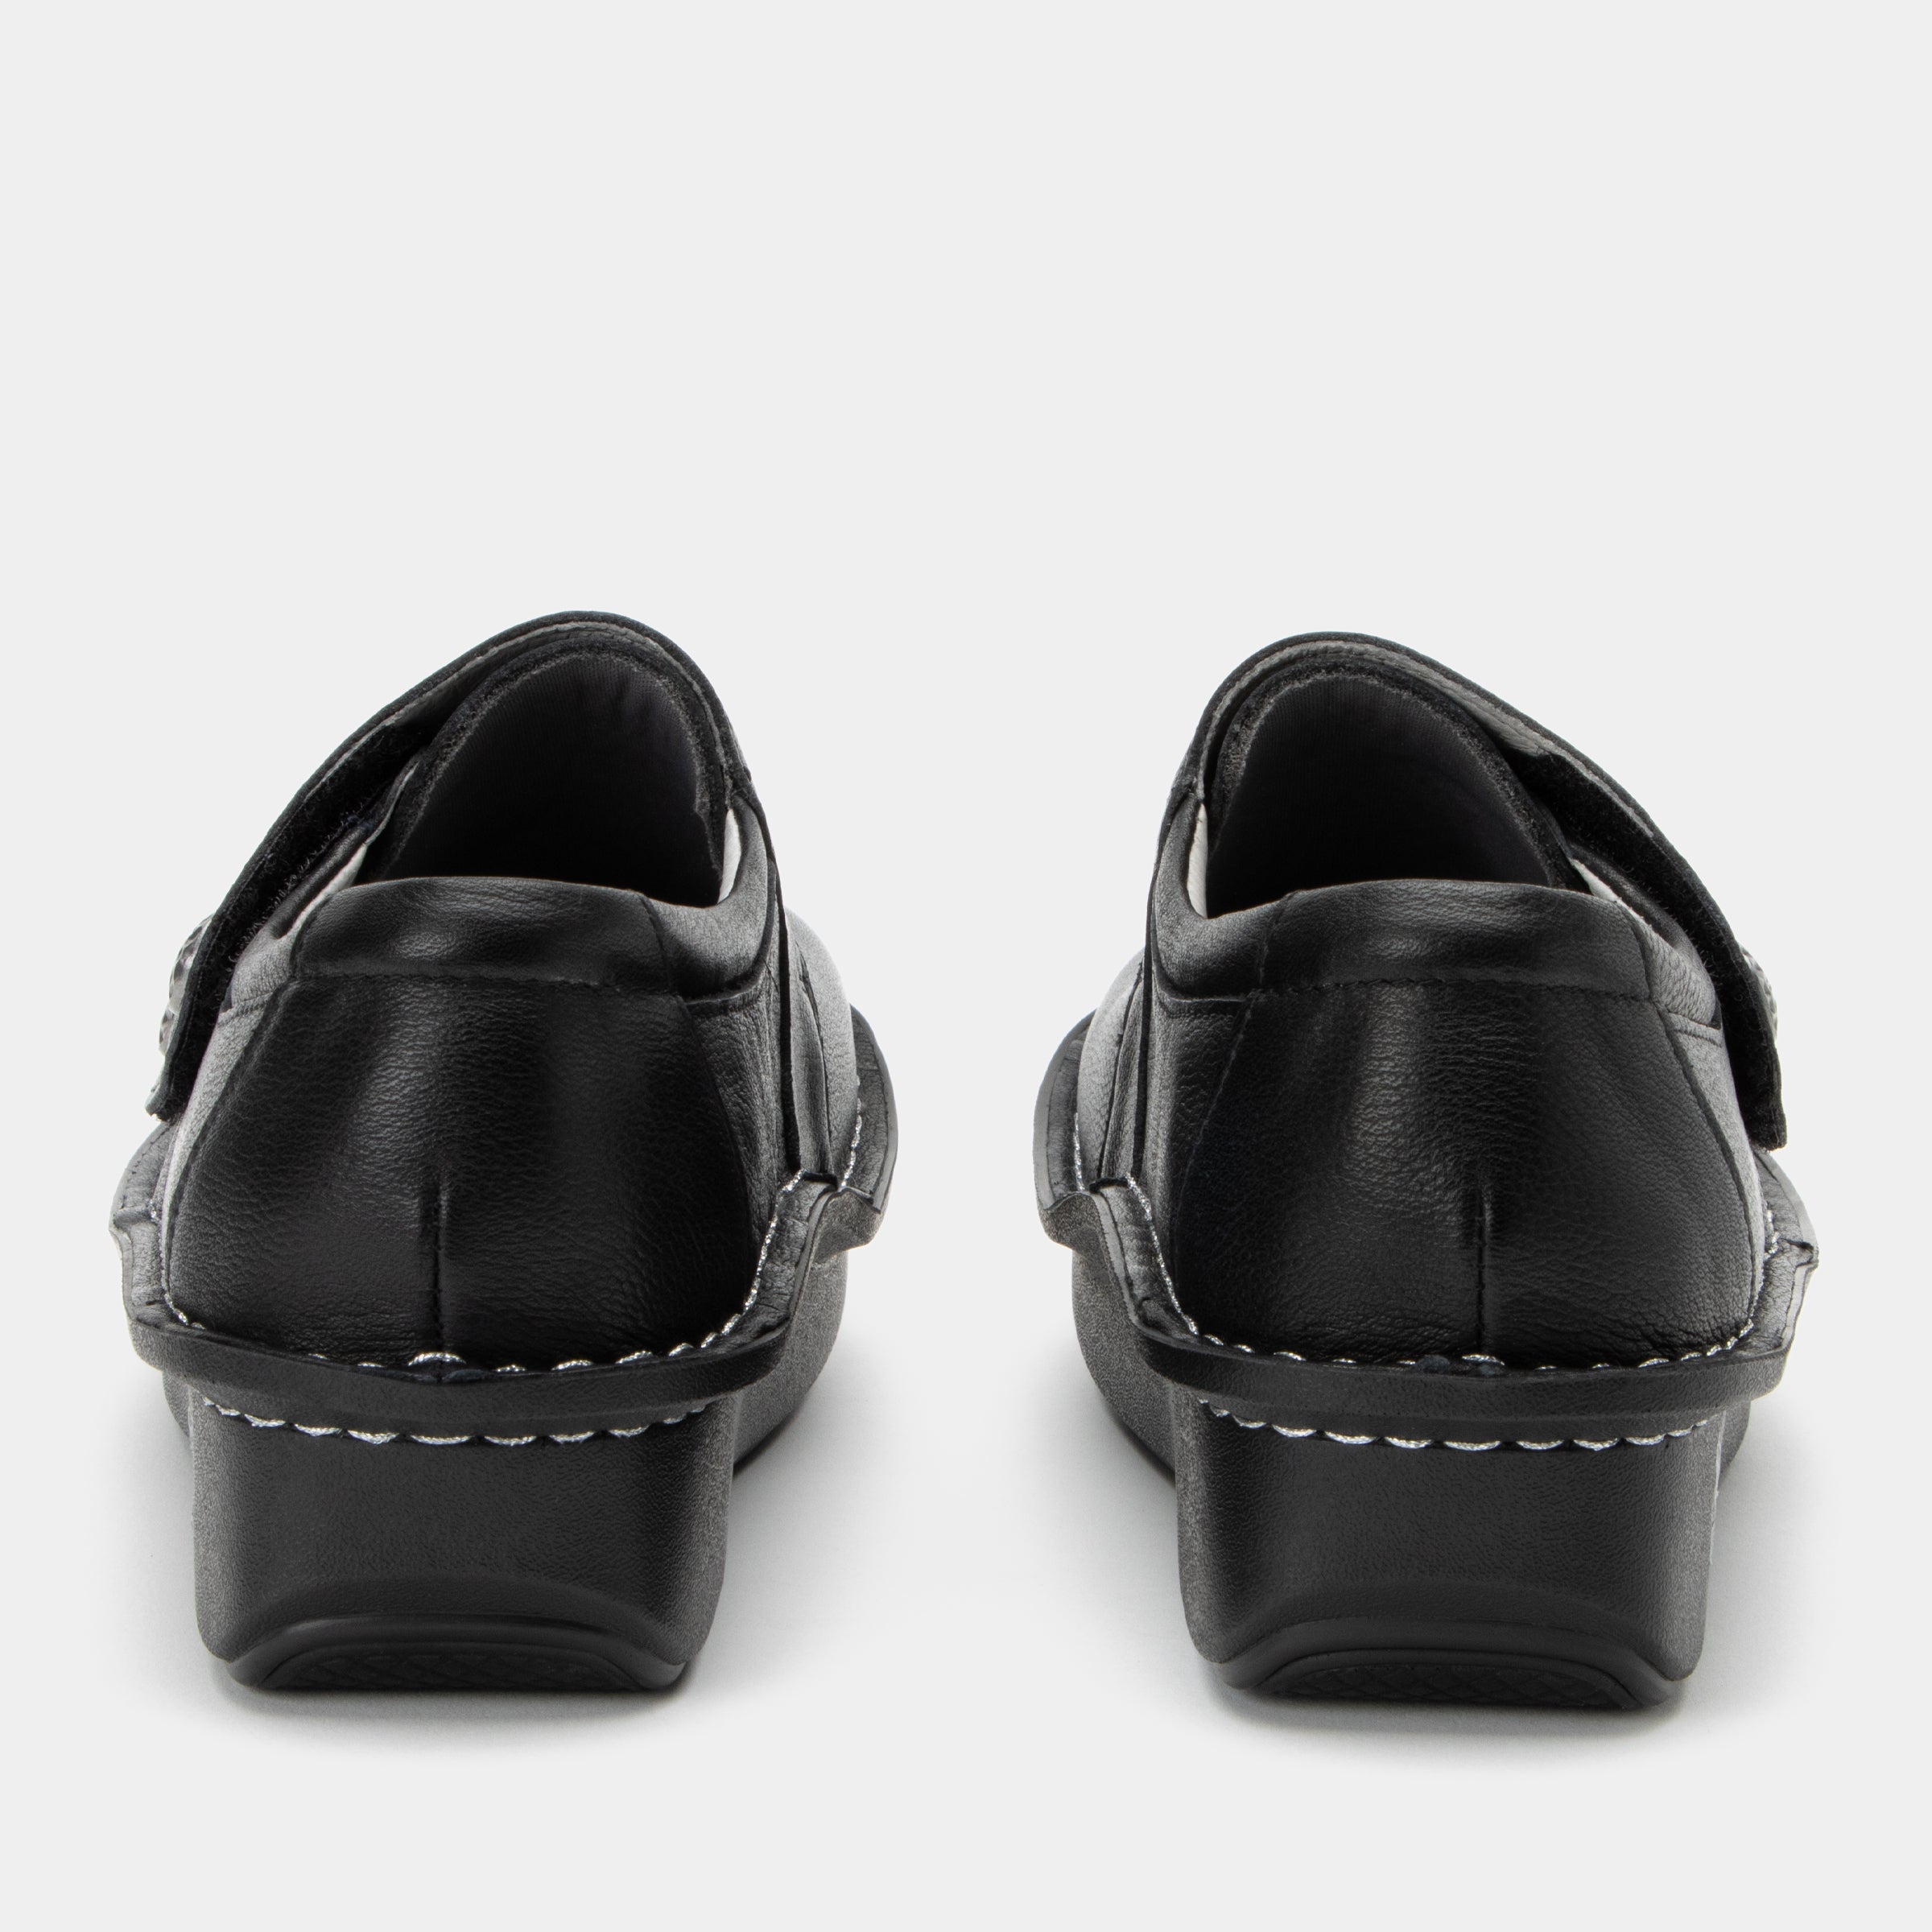 Deliah Upgrade Black Shoe - Alegria Shoes